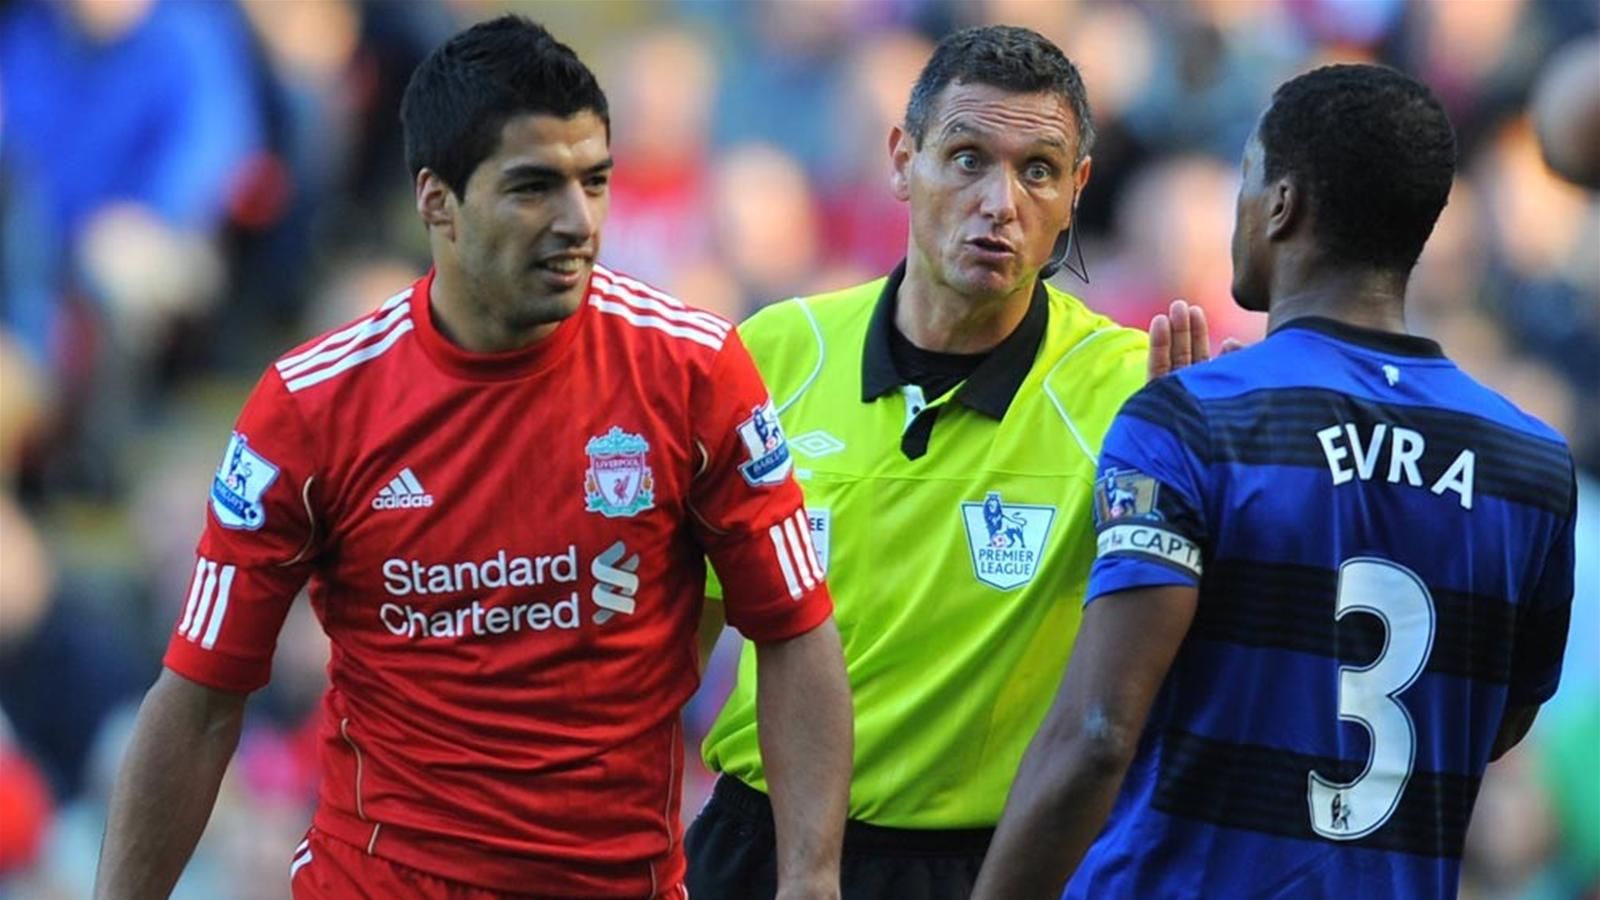 Sau tất cả, Evra nhận điều đặc biệt từ Liverpool sau scandal với Suarez - Bóng Đá